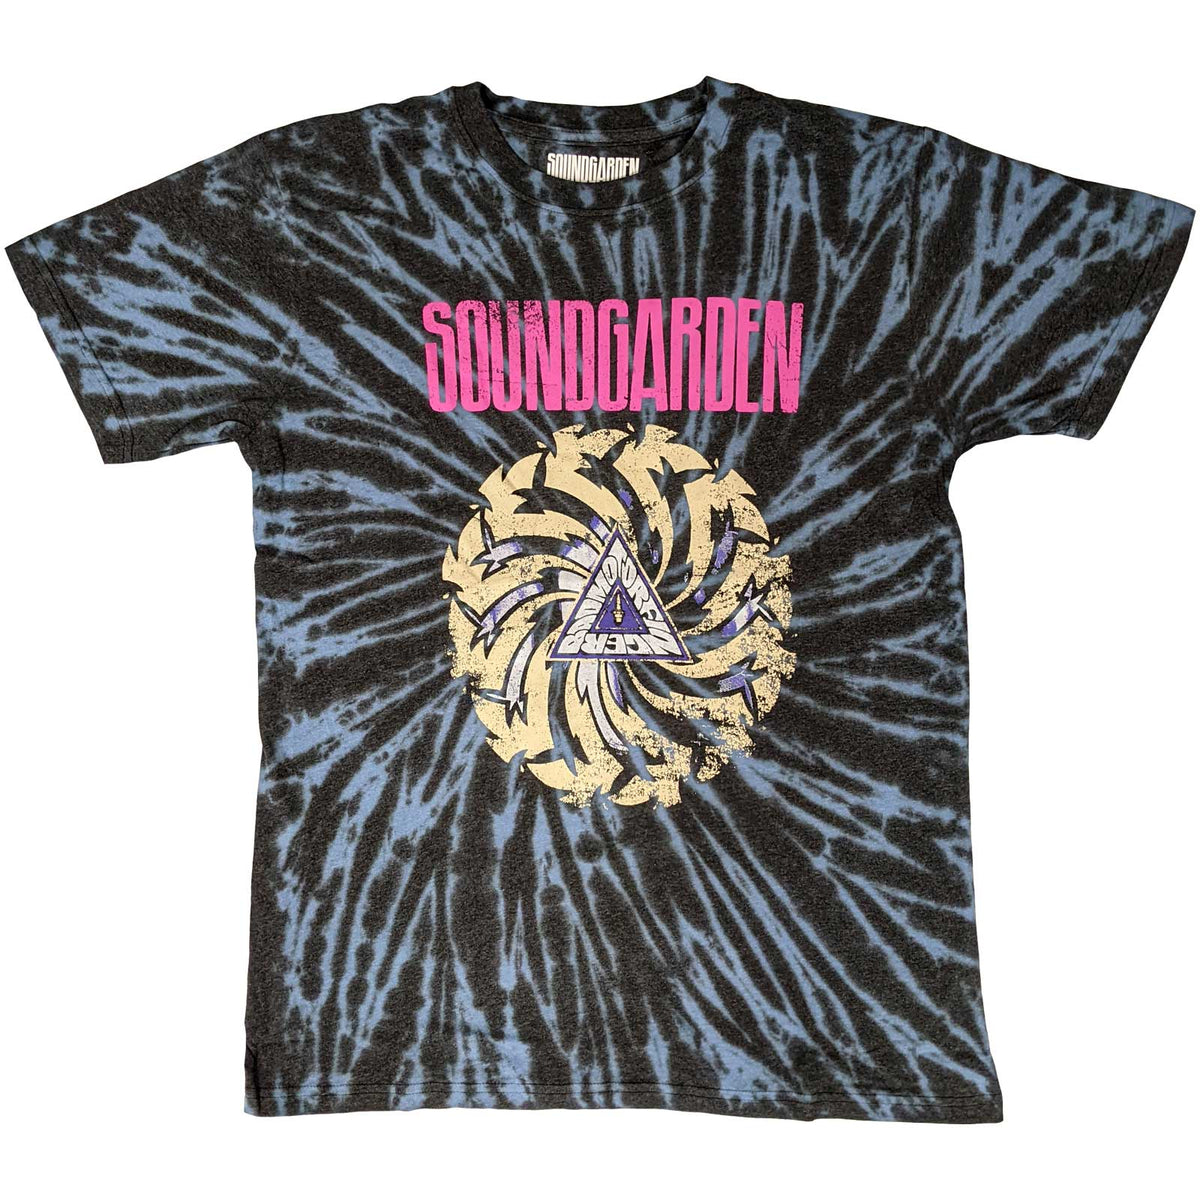 Soundgarden T-Shirt | Badmotorfinger